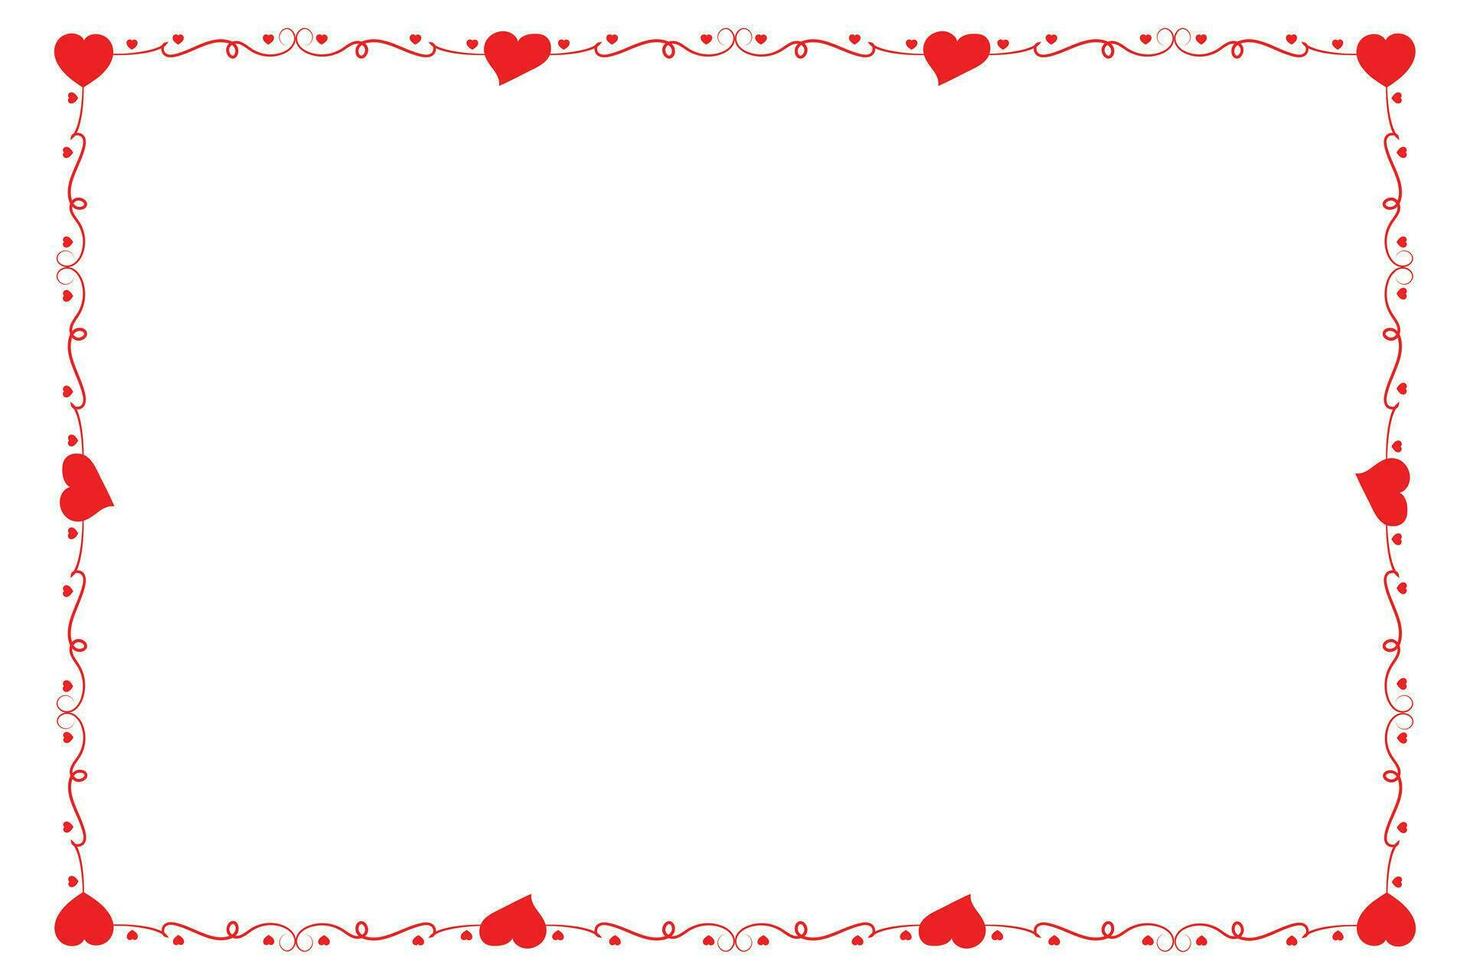 hart kolken romantisch liefde ornamenten geïsoleerd grens lay-out, rood harten overladen prijs kader grens, valentijnsdag dag kaart grens plein kader ontwerp, decoratief hart rechthoek kader vector element